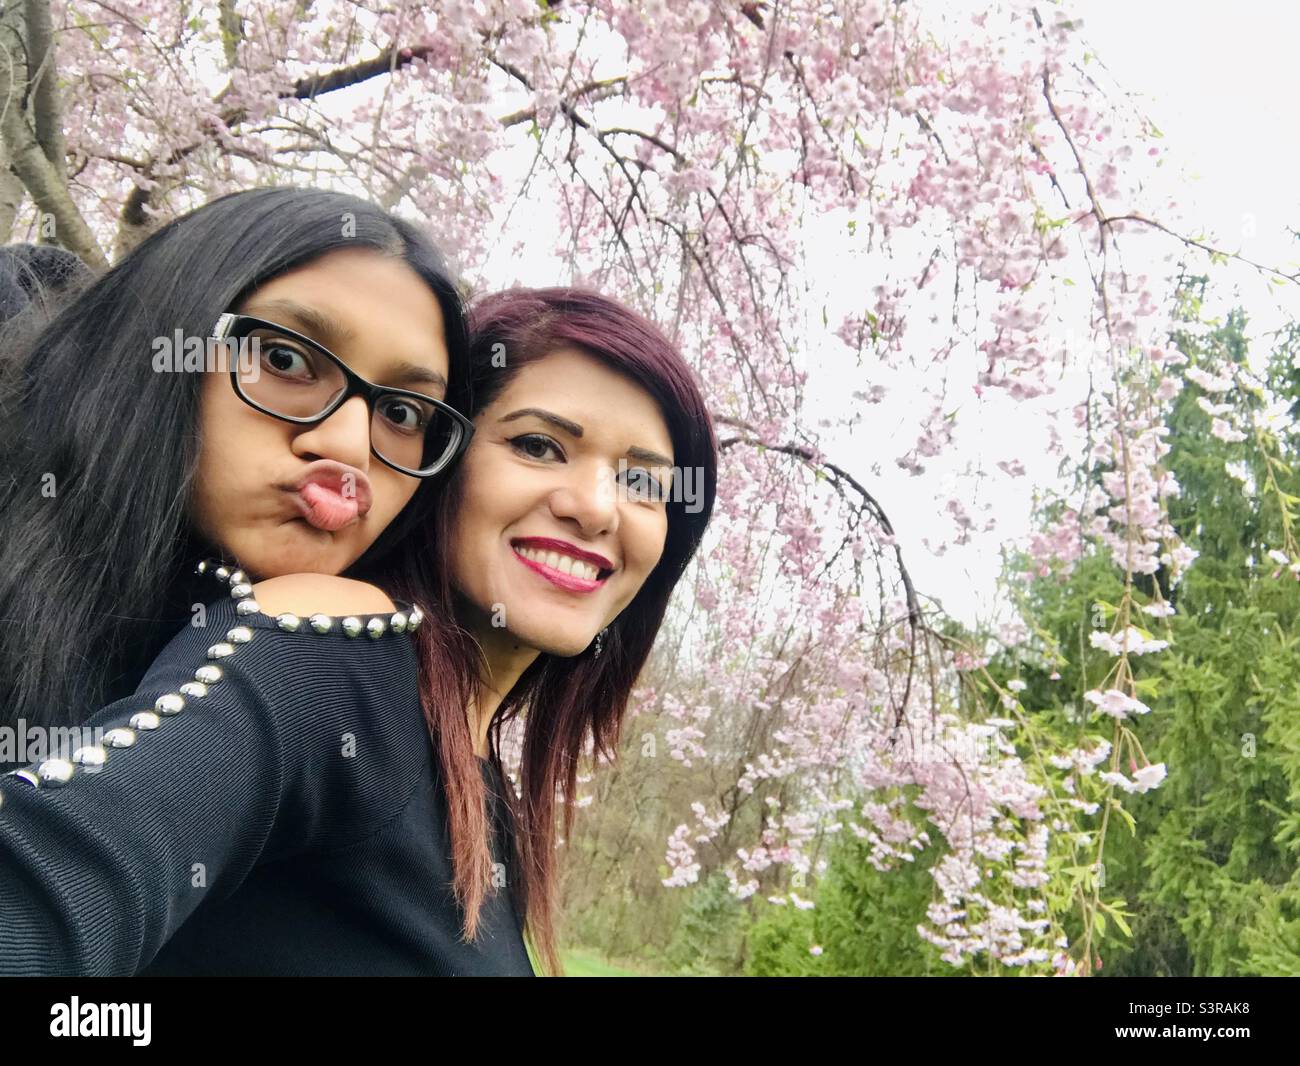 Eine Mutter und Tochter genießen den Frühlingstag im Freien und machen gemeinsam ein Selfie, während die Tochter spielerisch einen Pudel macht Stockfoto